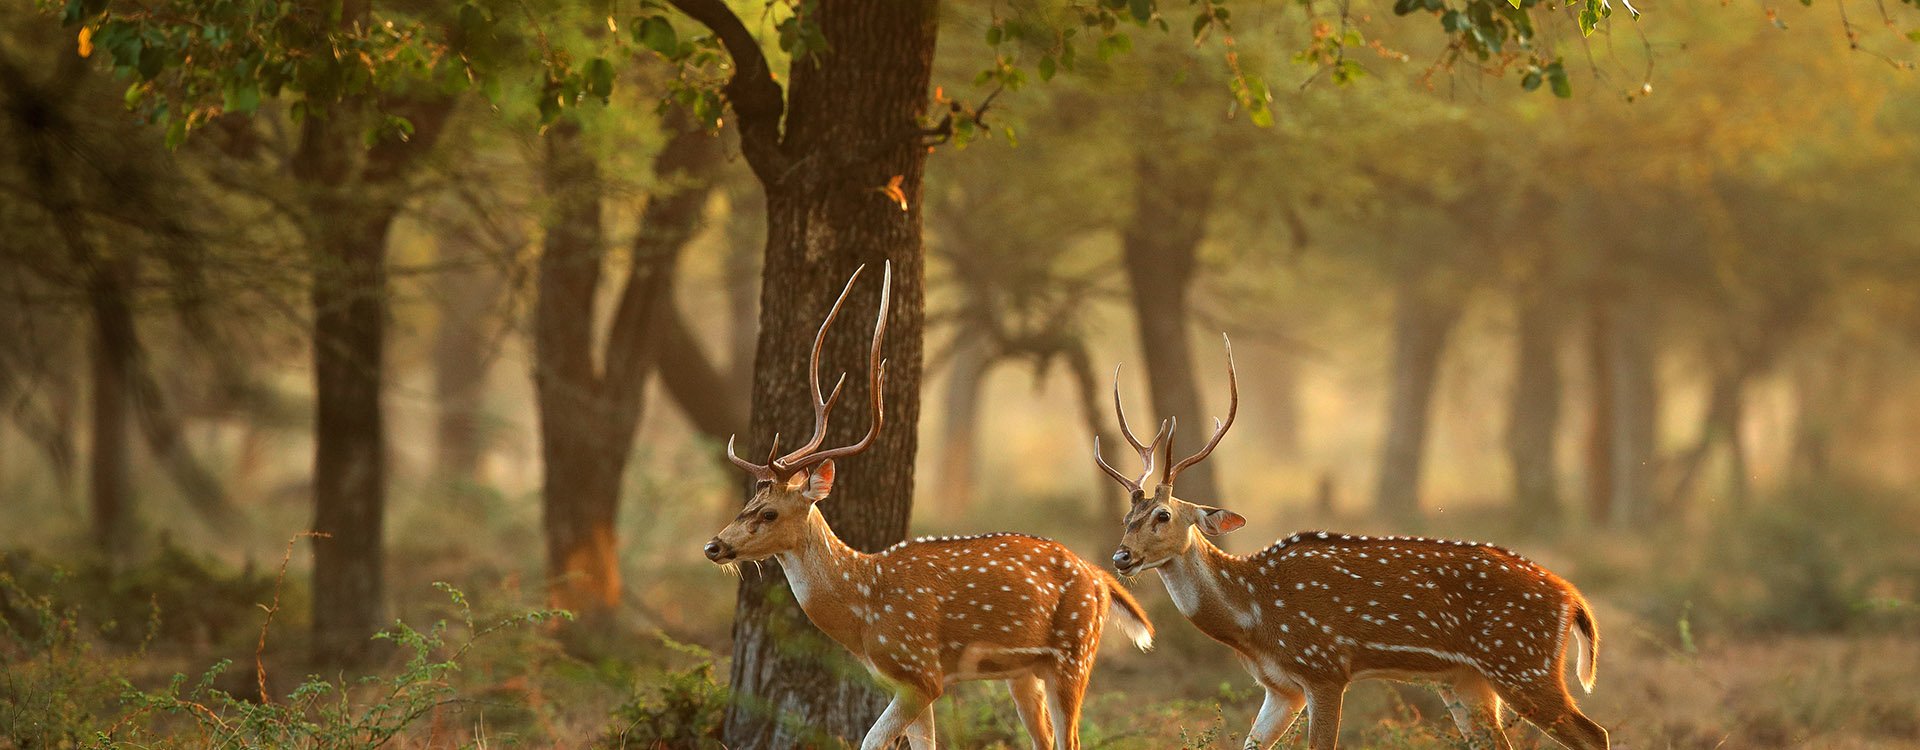 spotted deers or axis deer in nature habitat